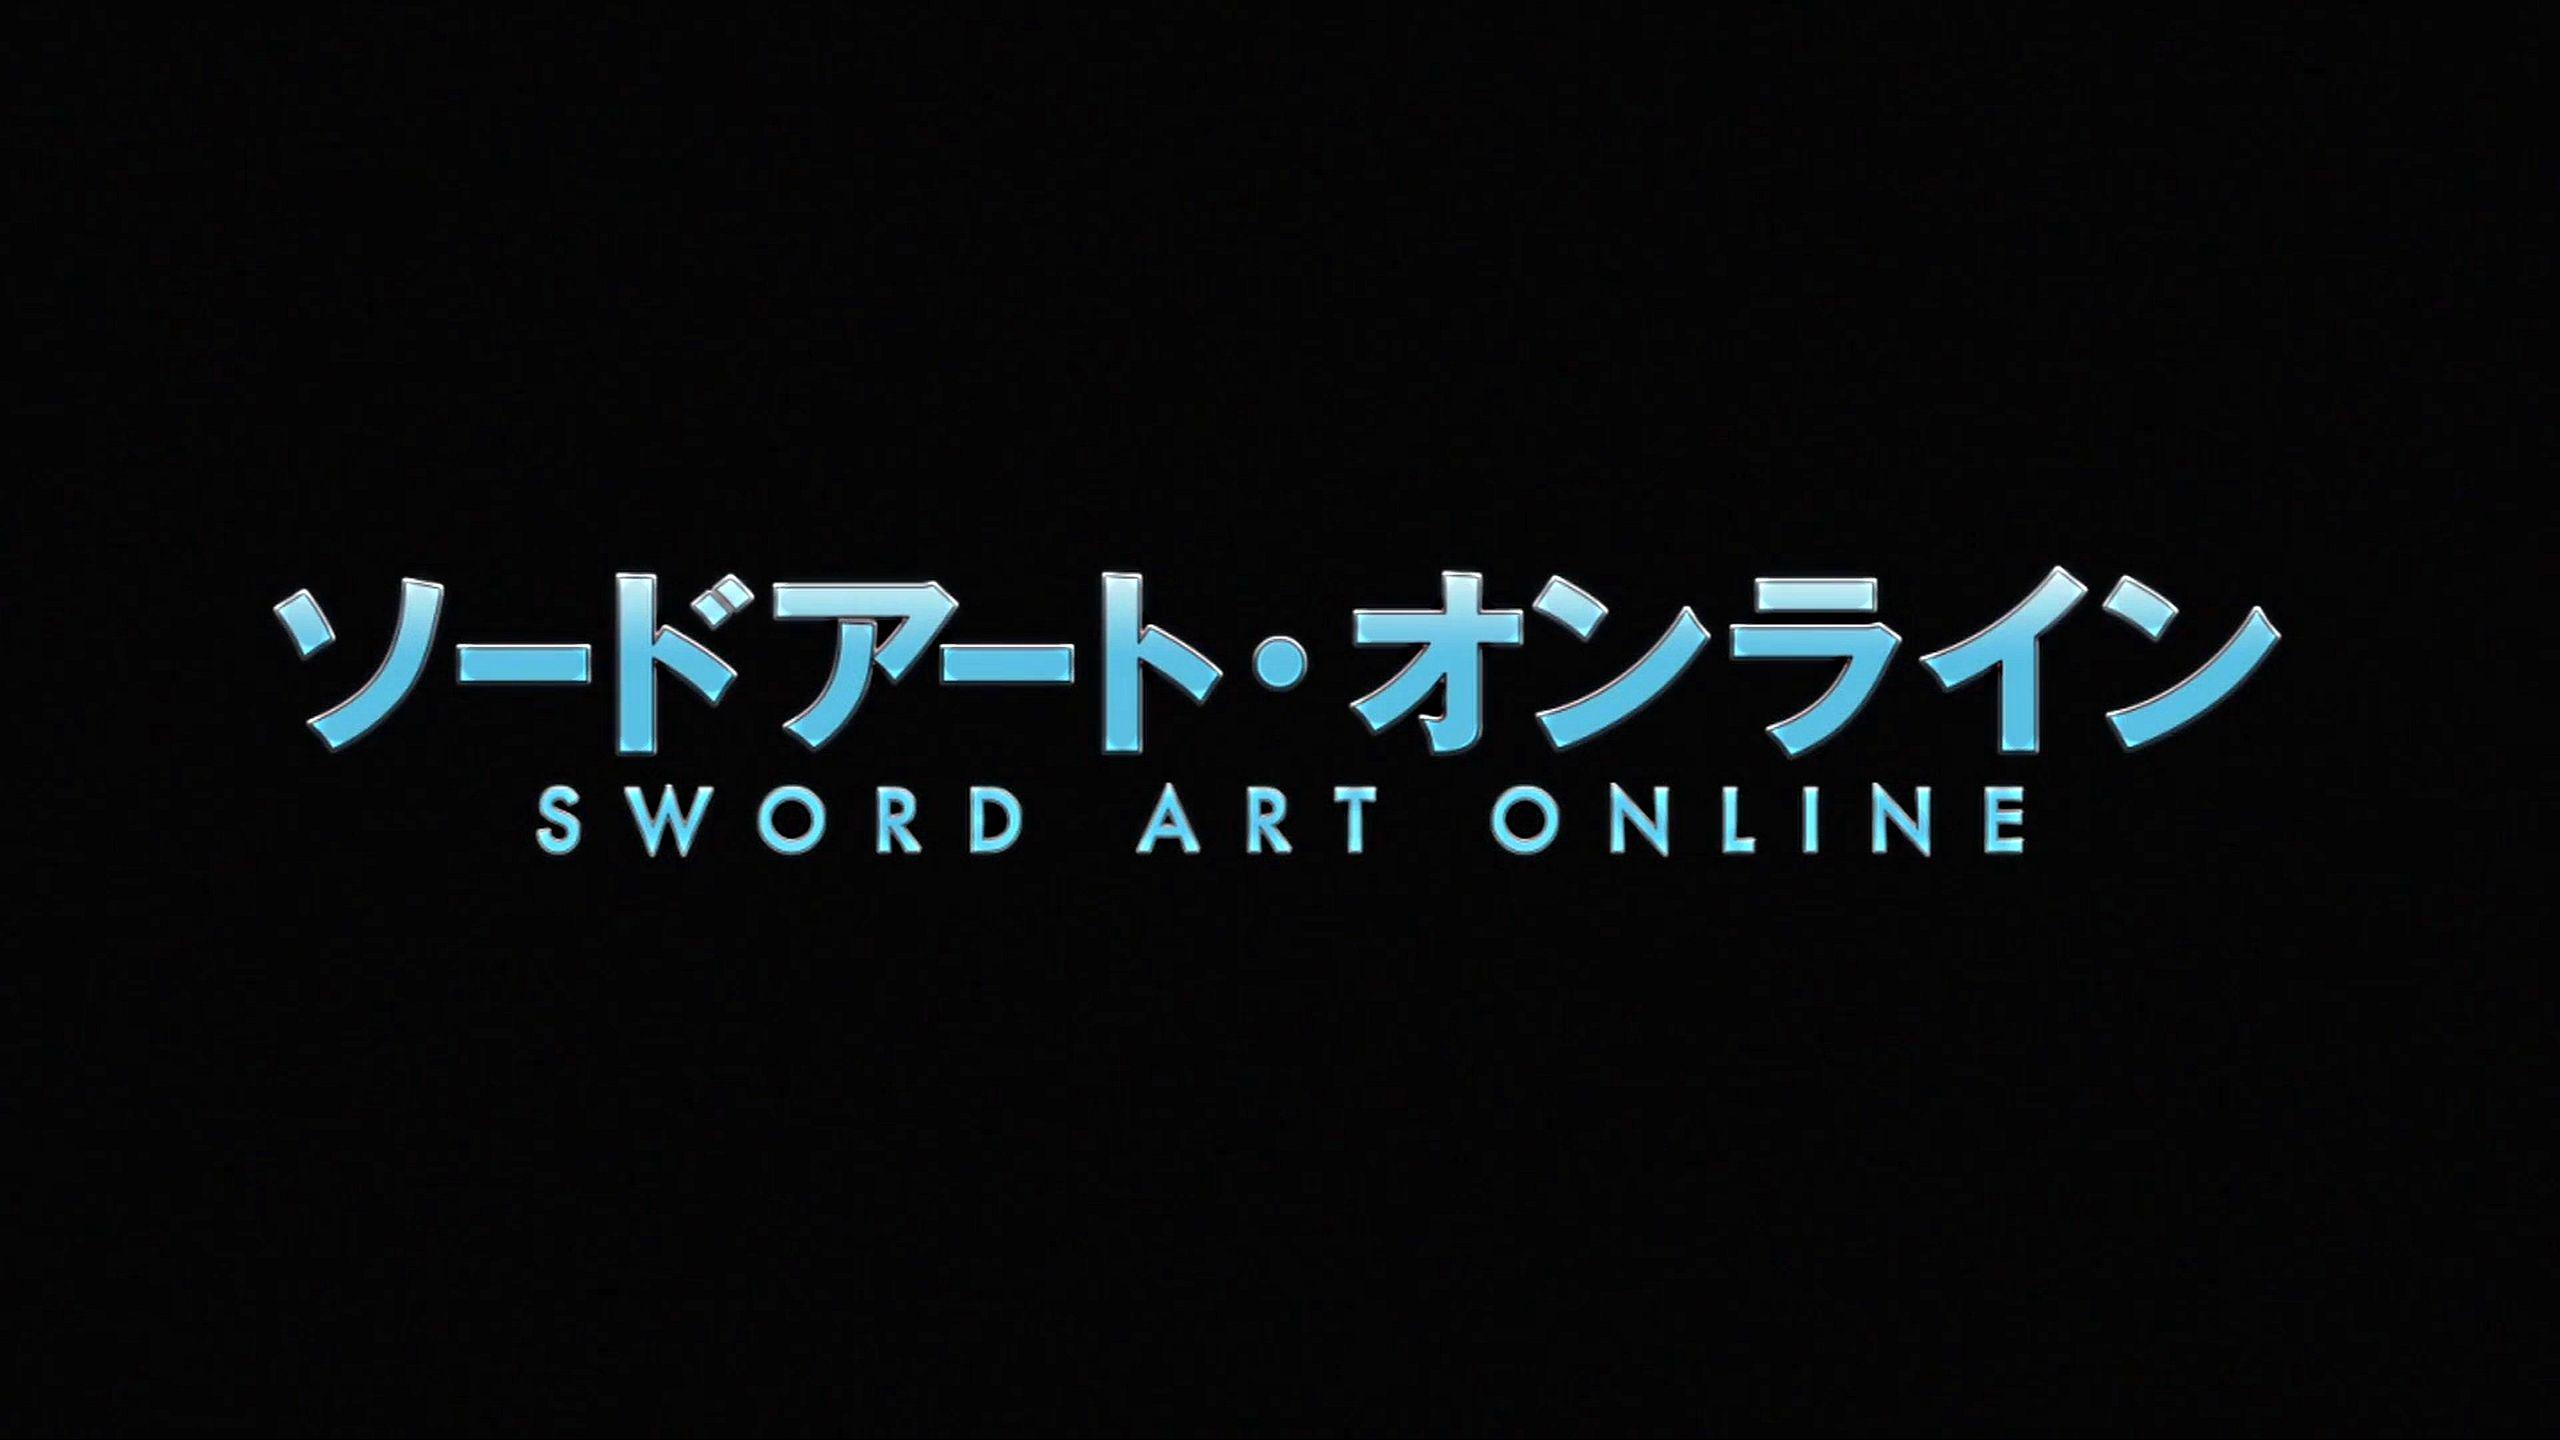 1533 Sword Art Online HD Wallpapers